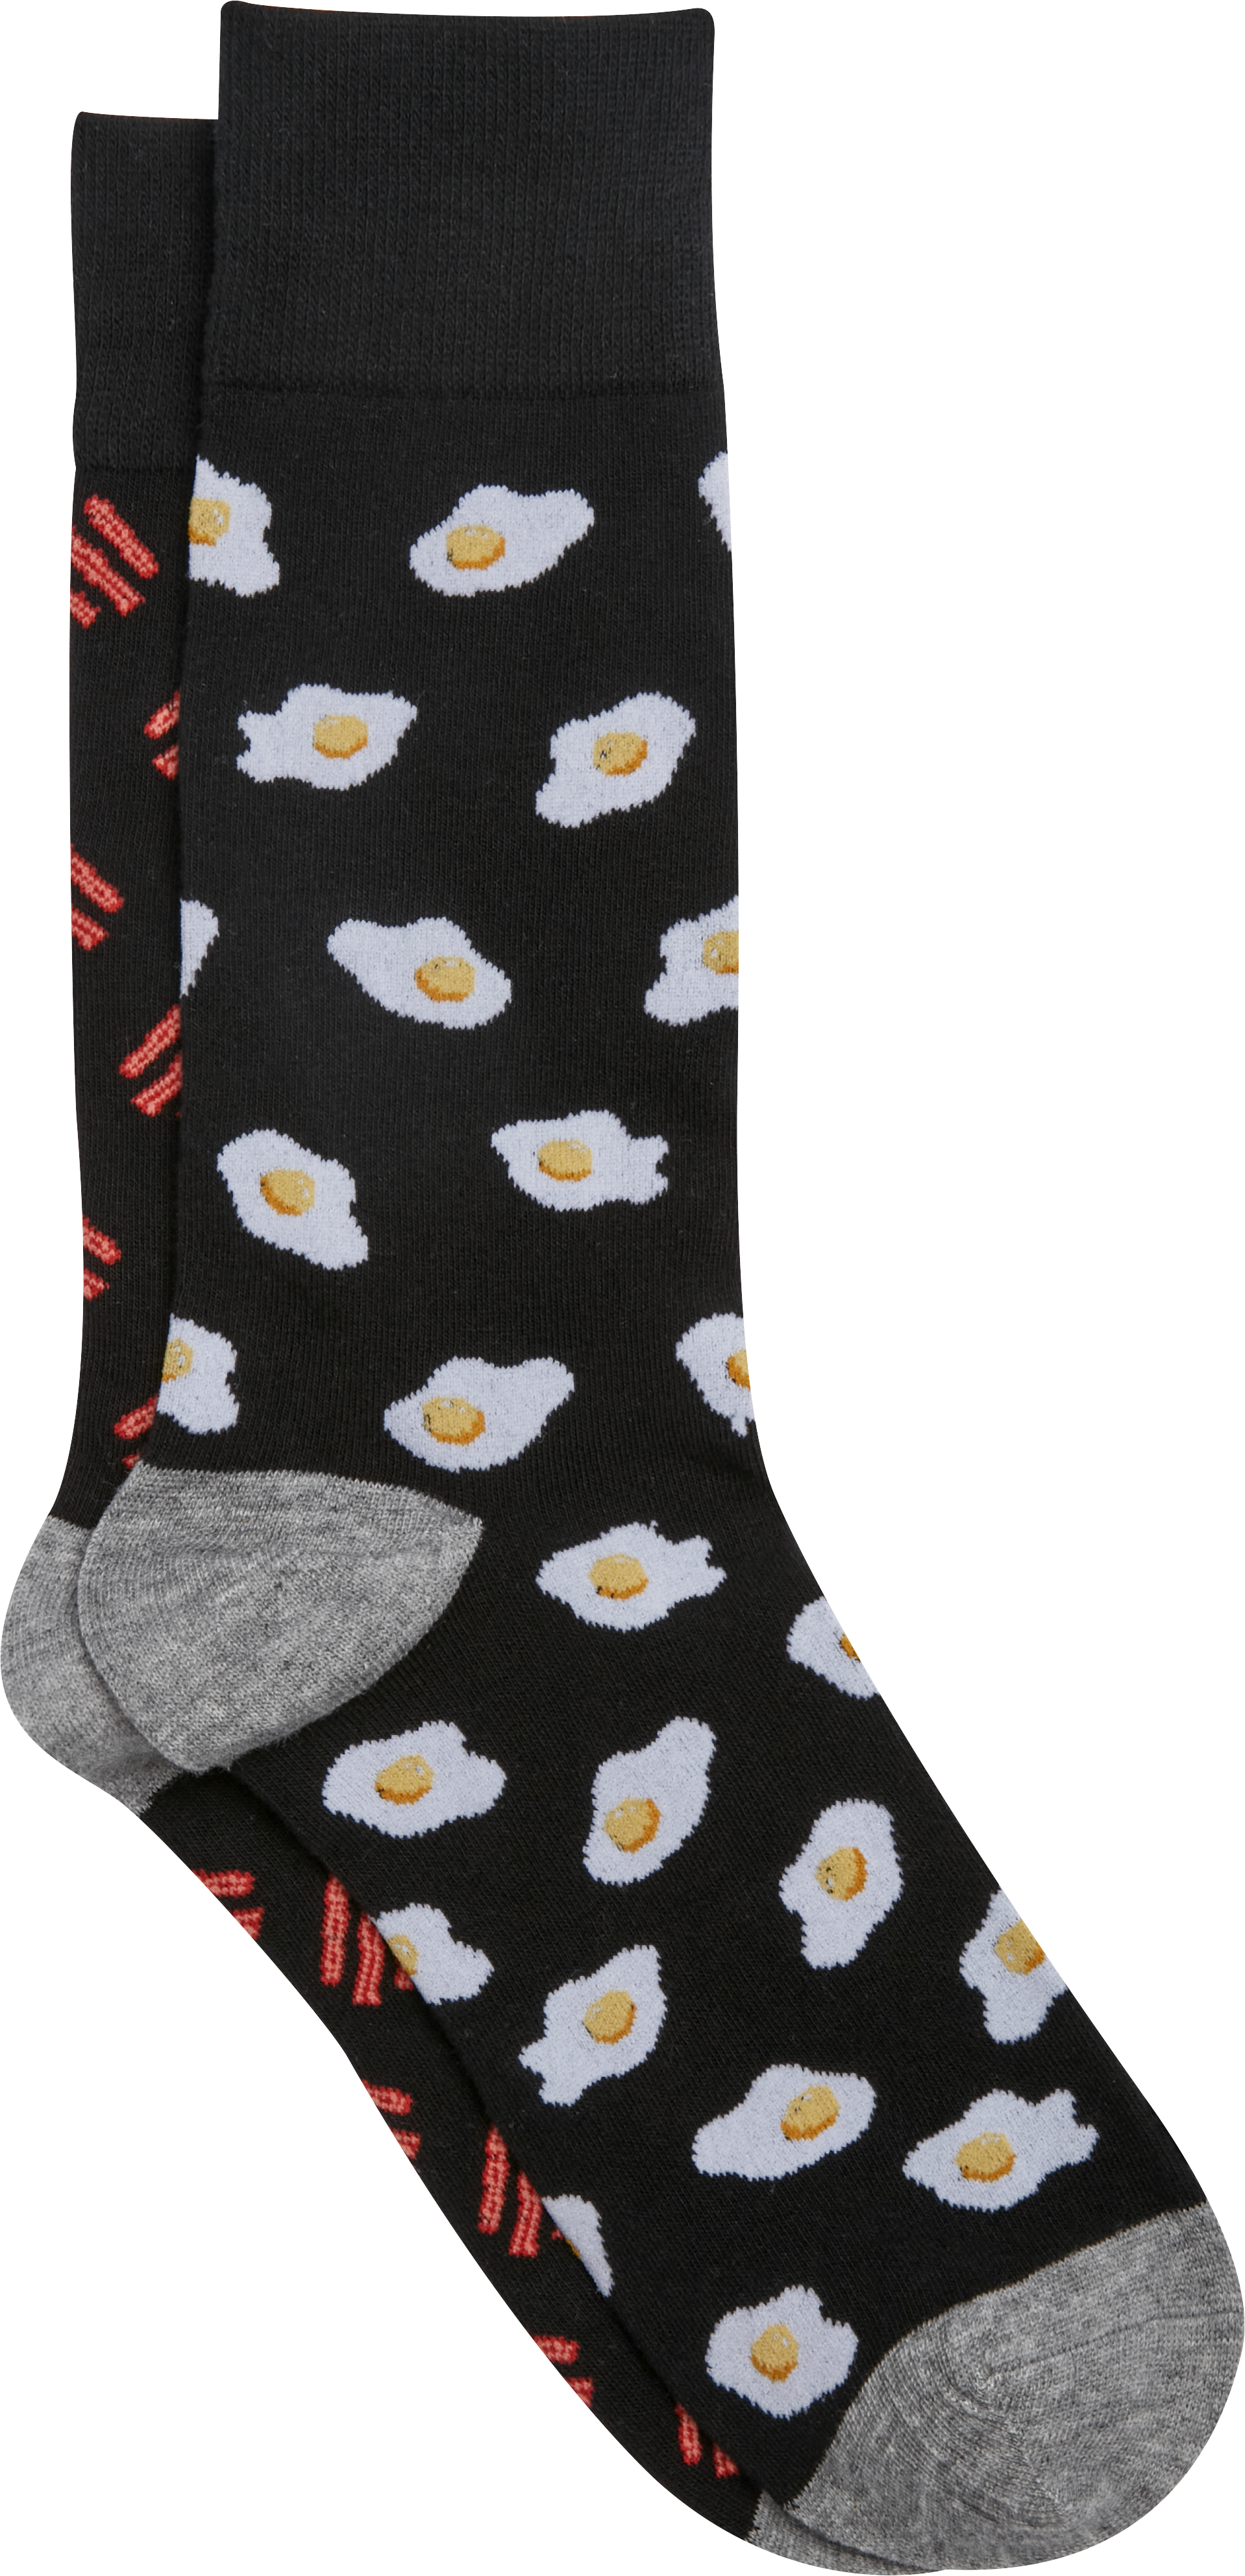 Bacon & Egg Socks